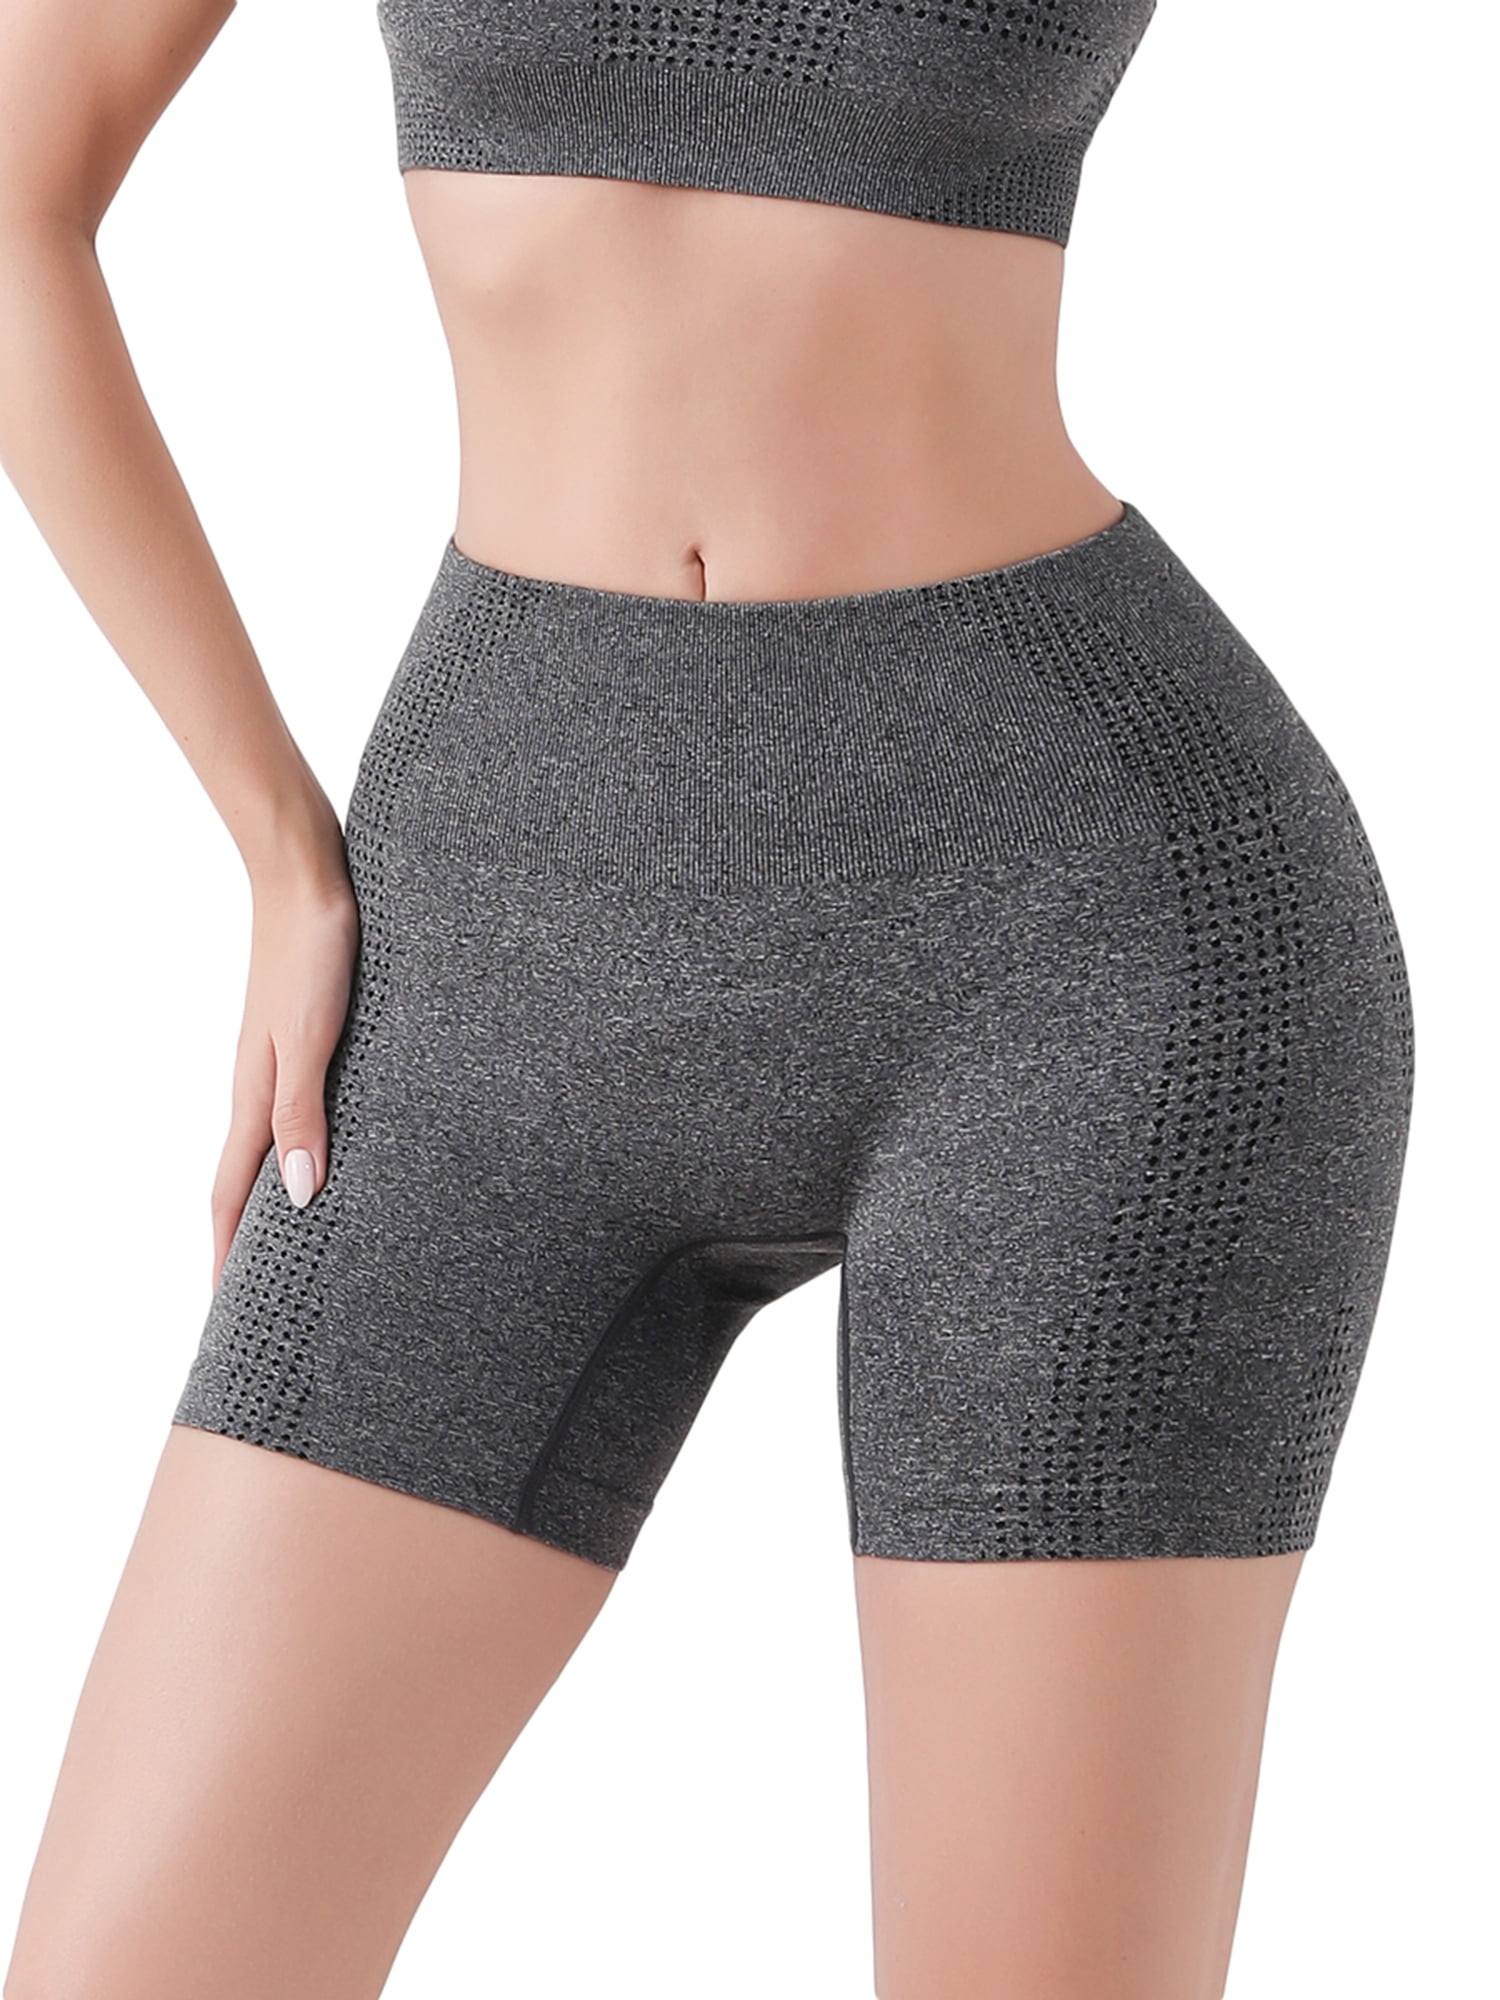 SHAPERIN Women Seamless Butt Lifter Padded Lace Panties Enhancer Underwear  Shorts